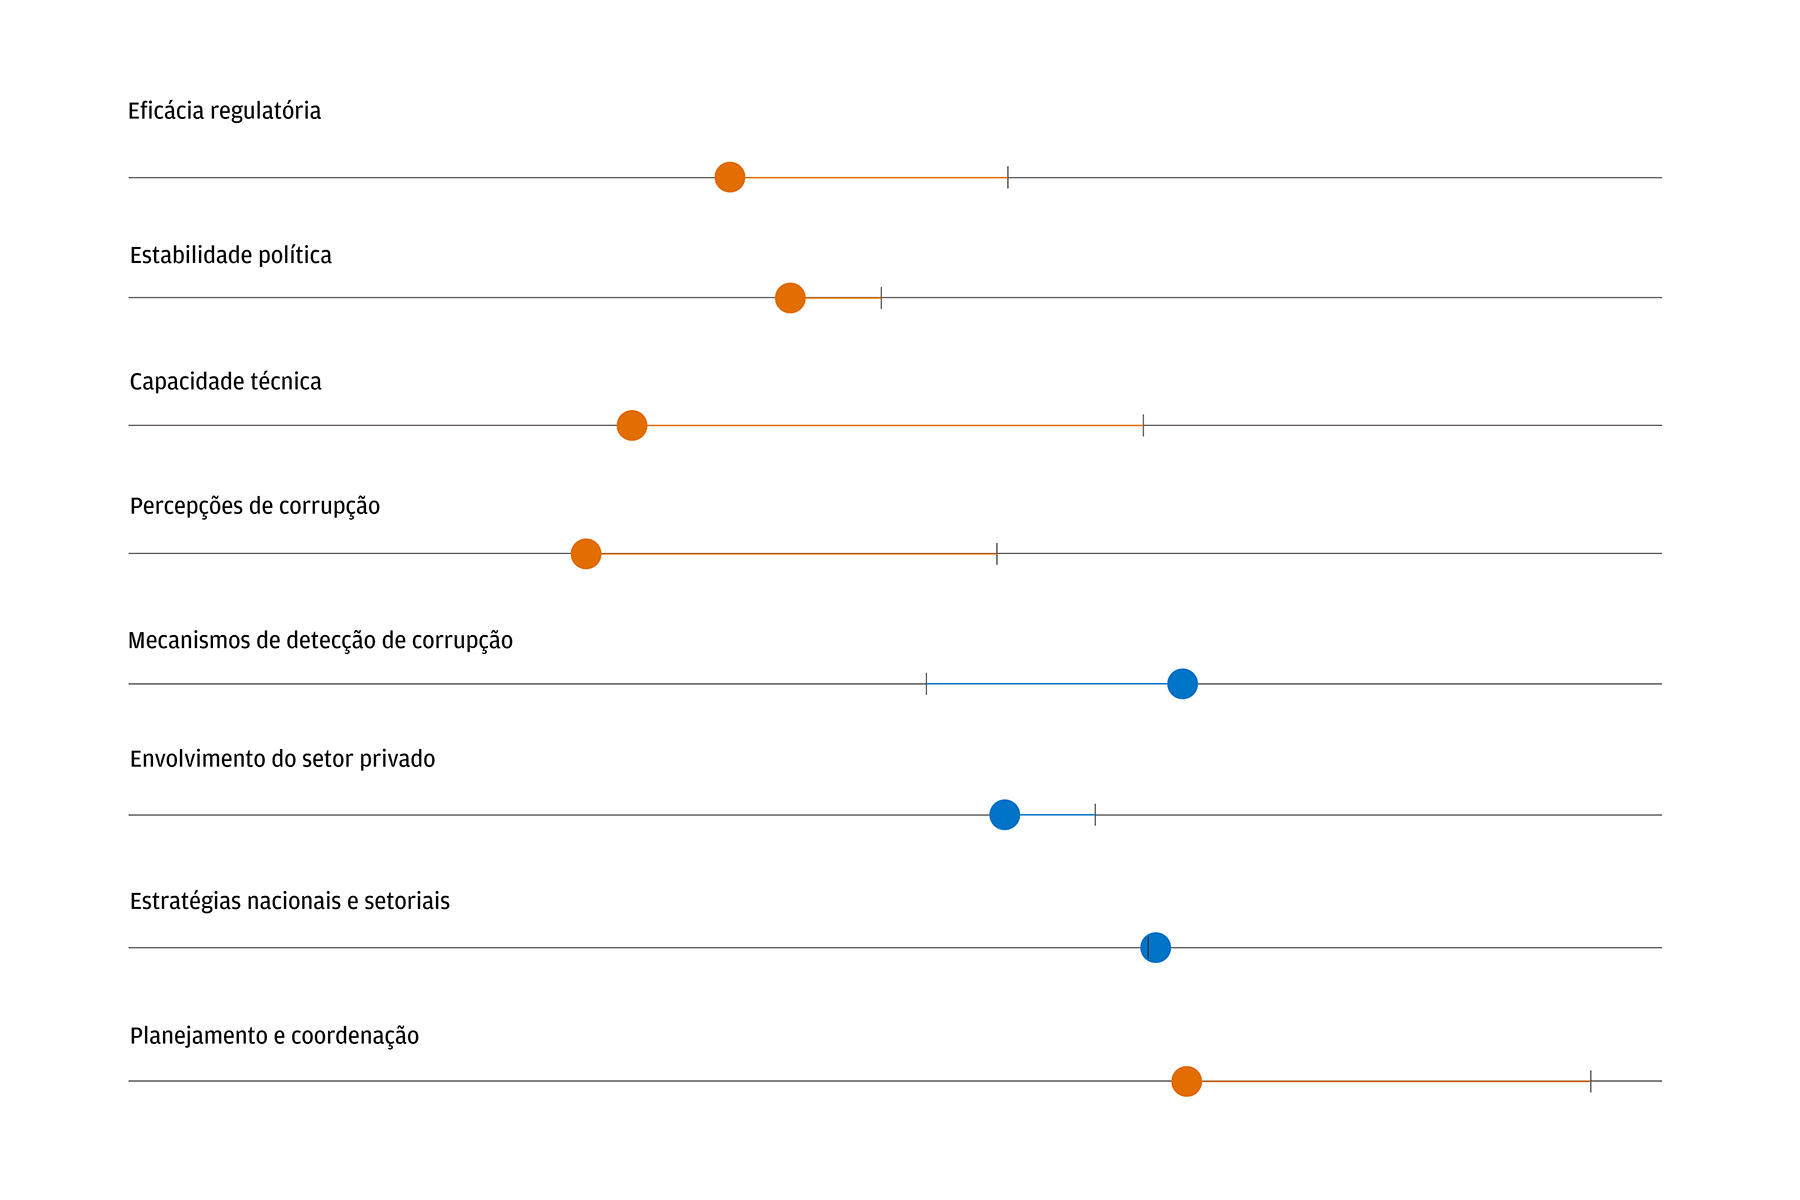 O gráfico mostra a Argentina com uma pontuação bem abaixo da média no indicador de eficácia regulatória no que se refere ao desenvolvimento de infraestrutura, bem como em seus subindicadores, estabilidade política, capacidade técnica e percepções de corrupção.